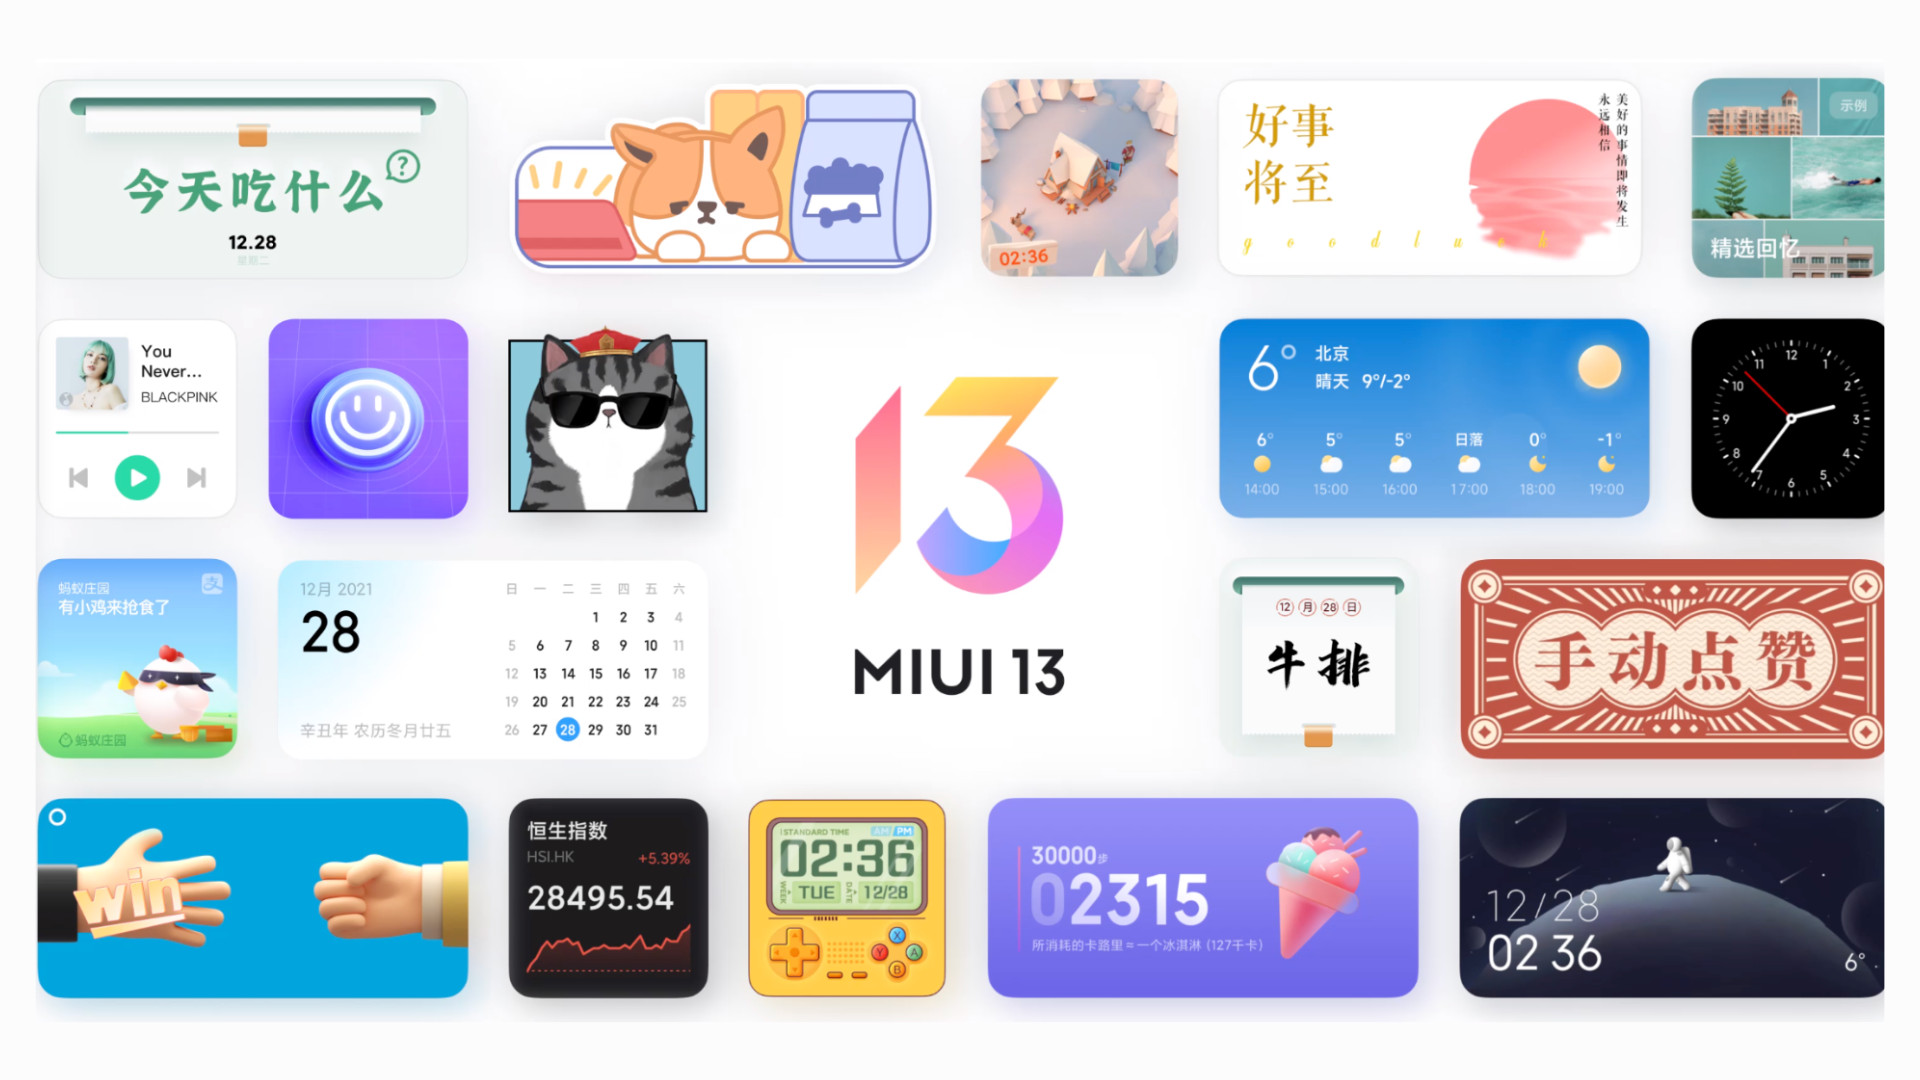 87 смартфонов Xiaomi получили стабильную MIUI 13: опубликован полный список моделей